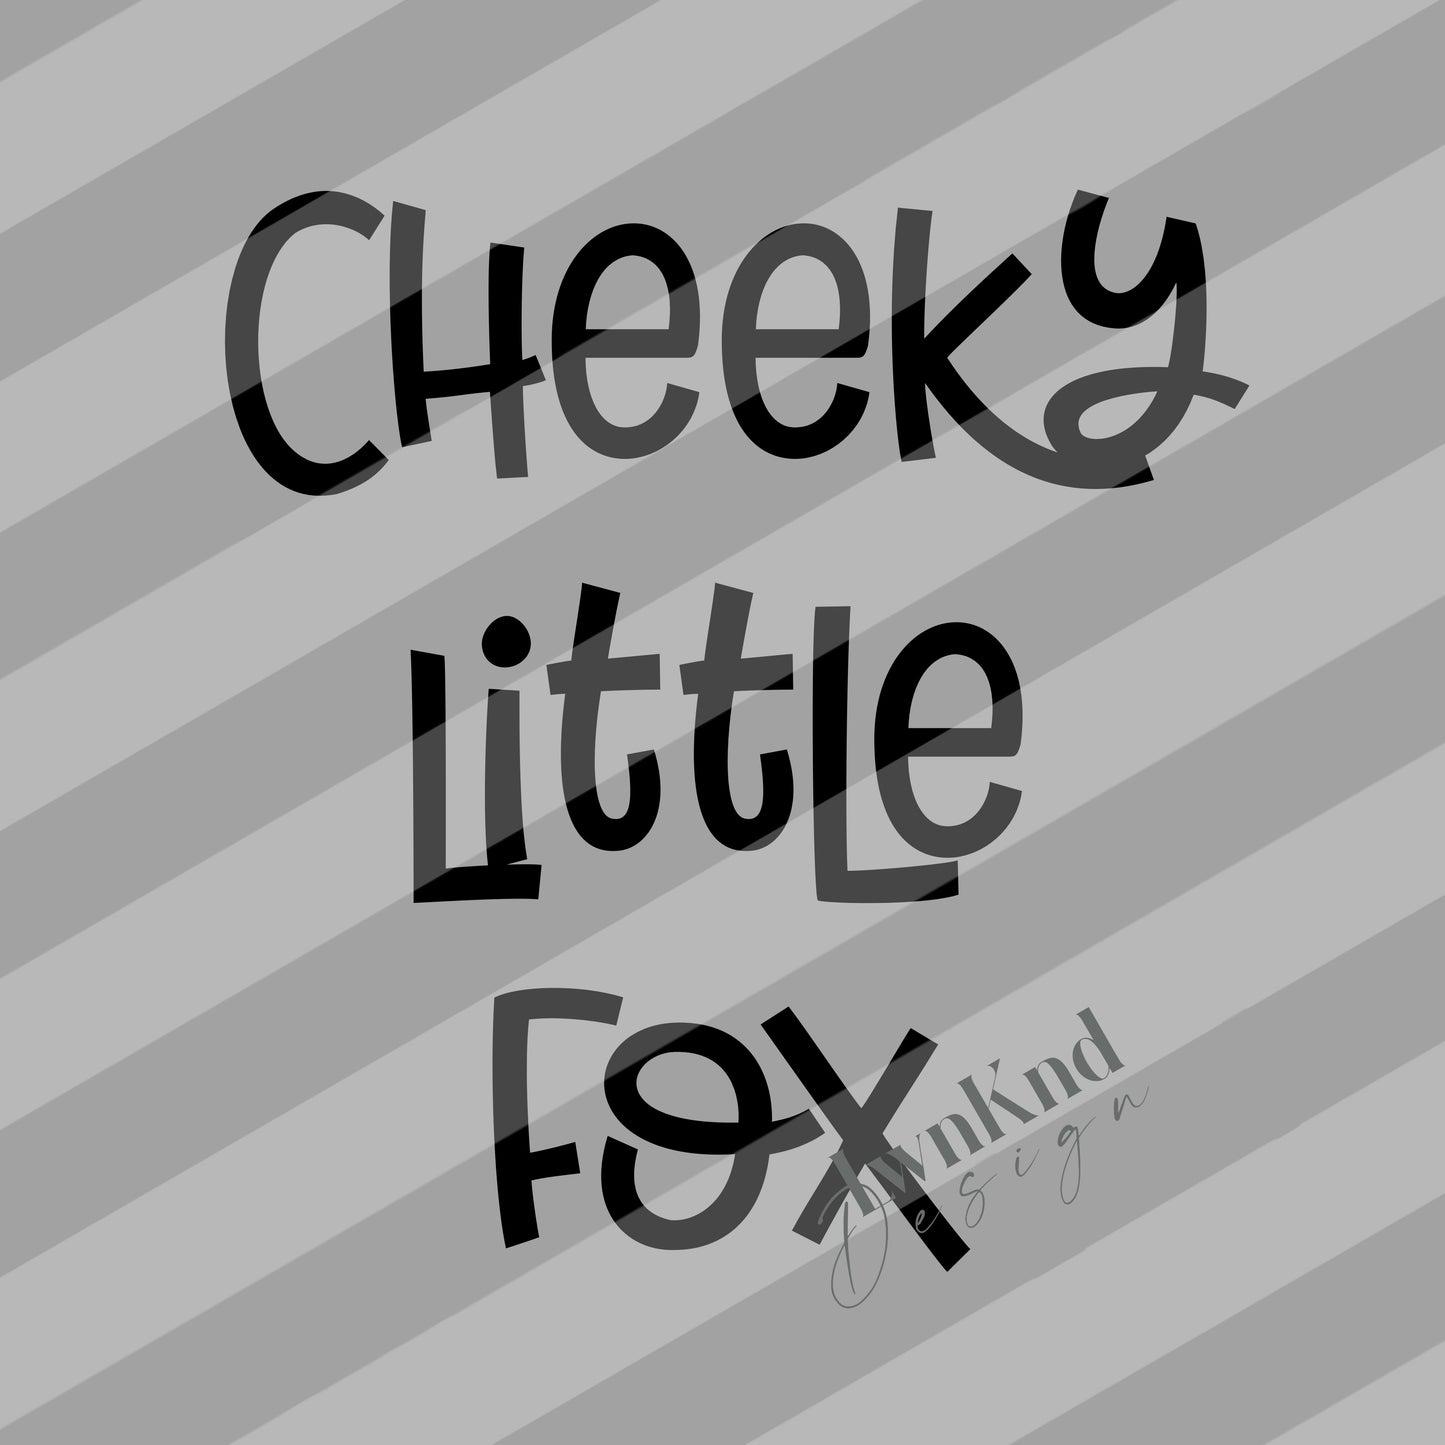 Cheeky little fox